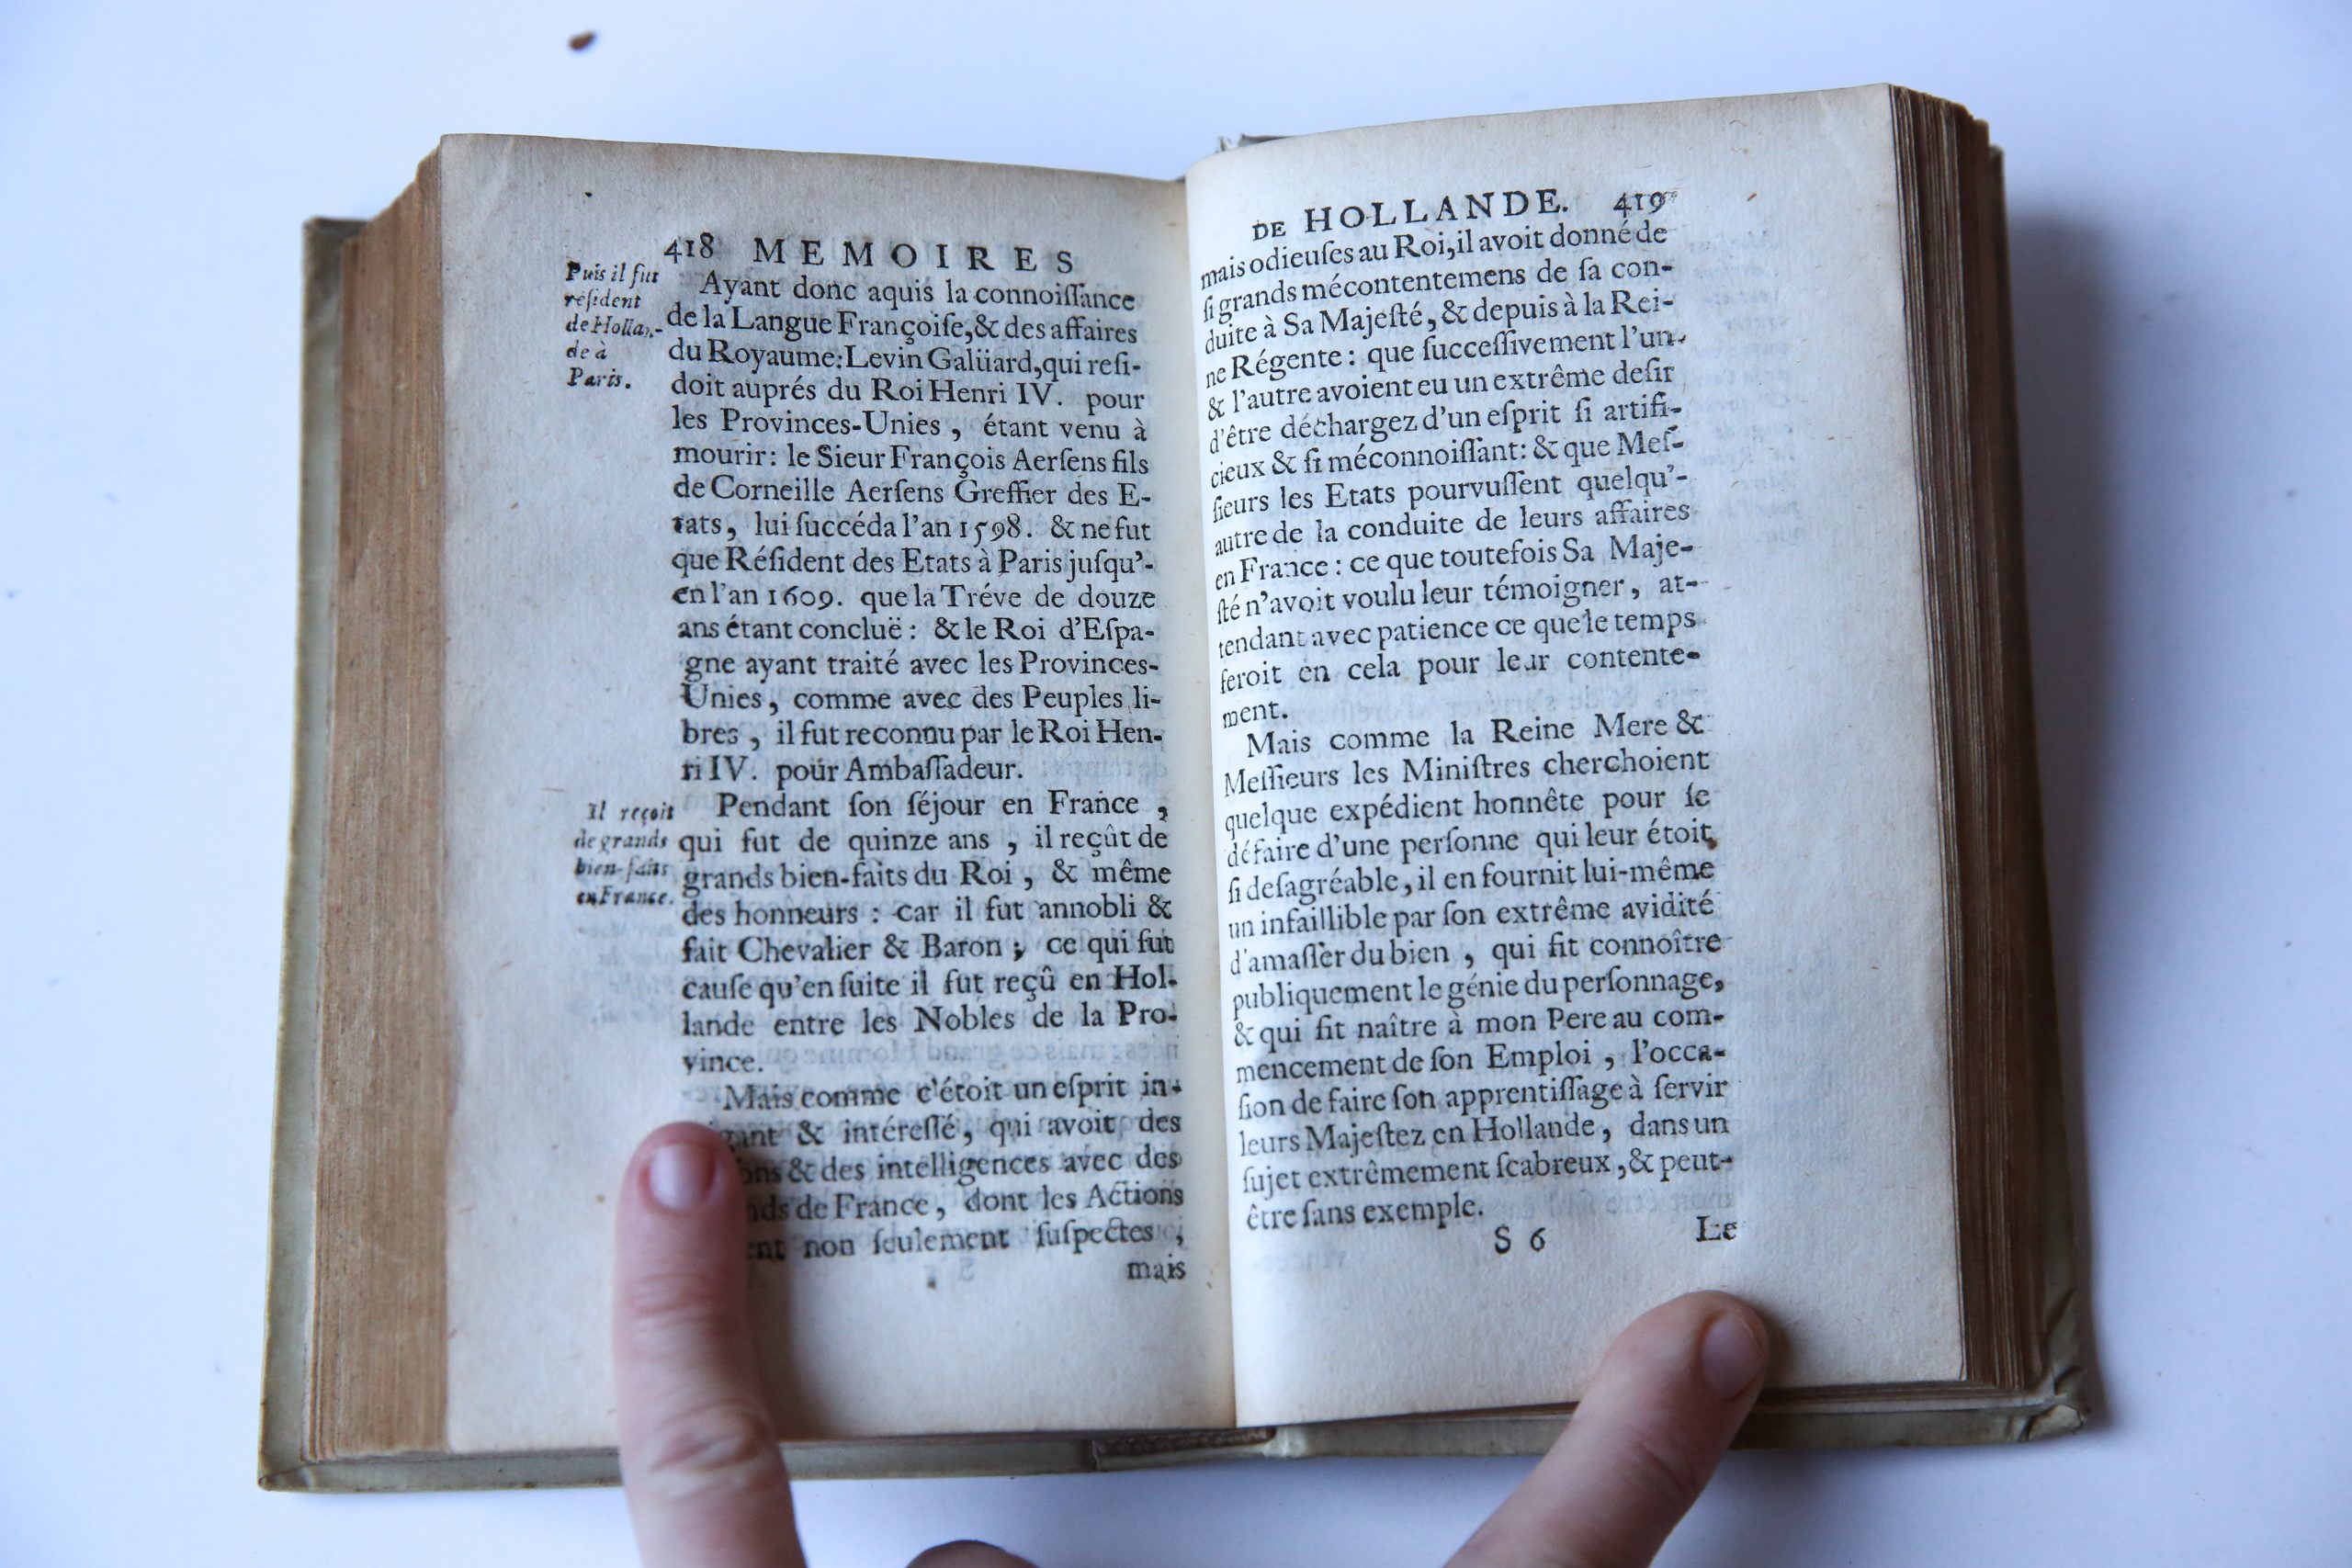 Memoires pour servir a l'histoire de Hollande et des autres provinces-unies, Imprime a la Fleche, a Paris chez Jean Villette, 1697.